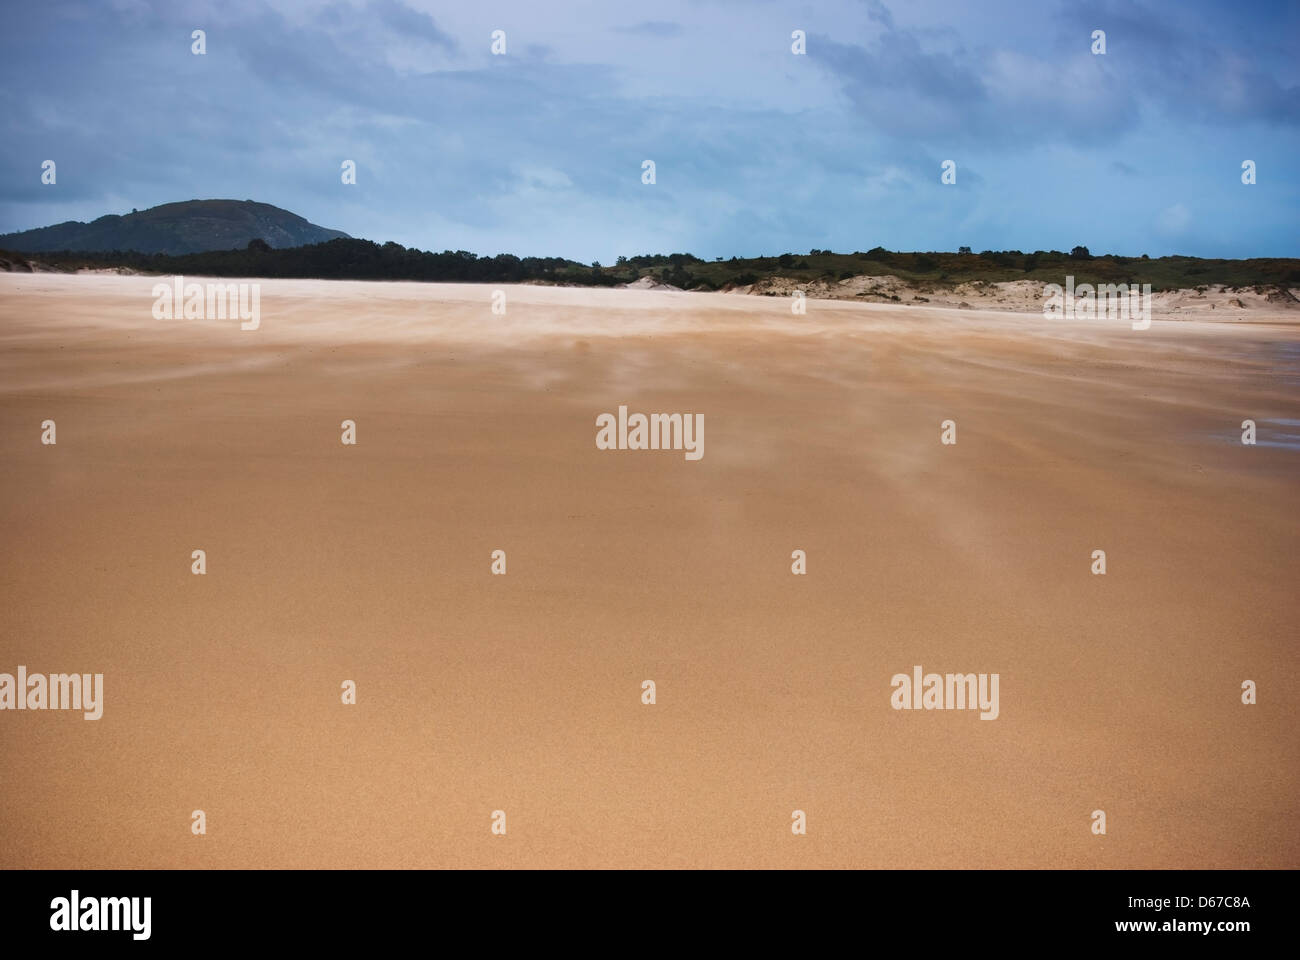 Paesaggio spiaggia solitaria giornata con cielo molto nuvoloso Foto Stock